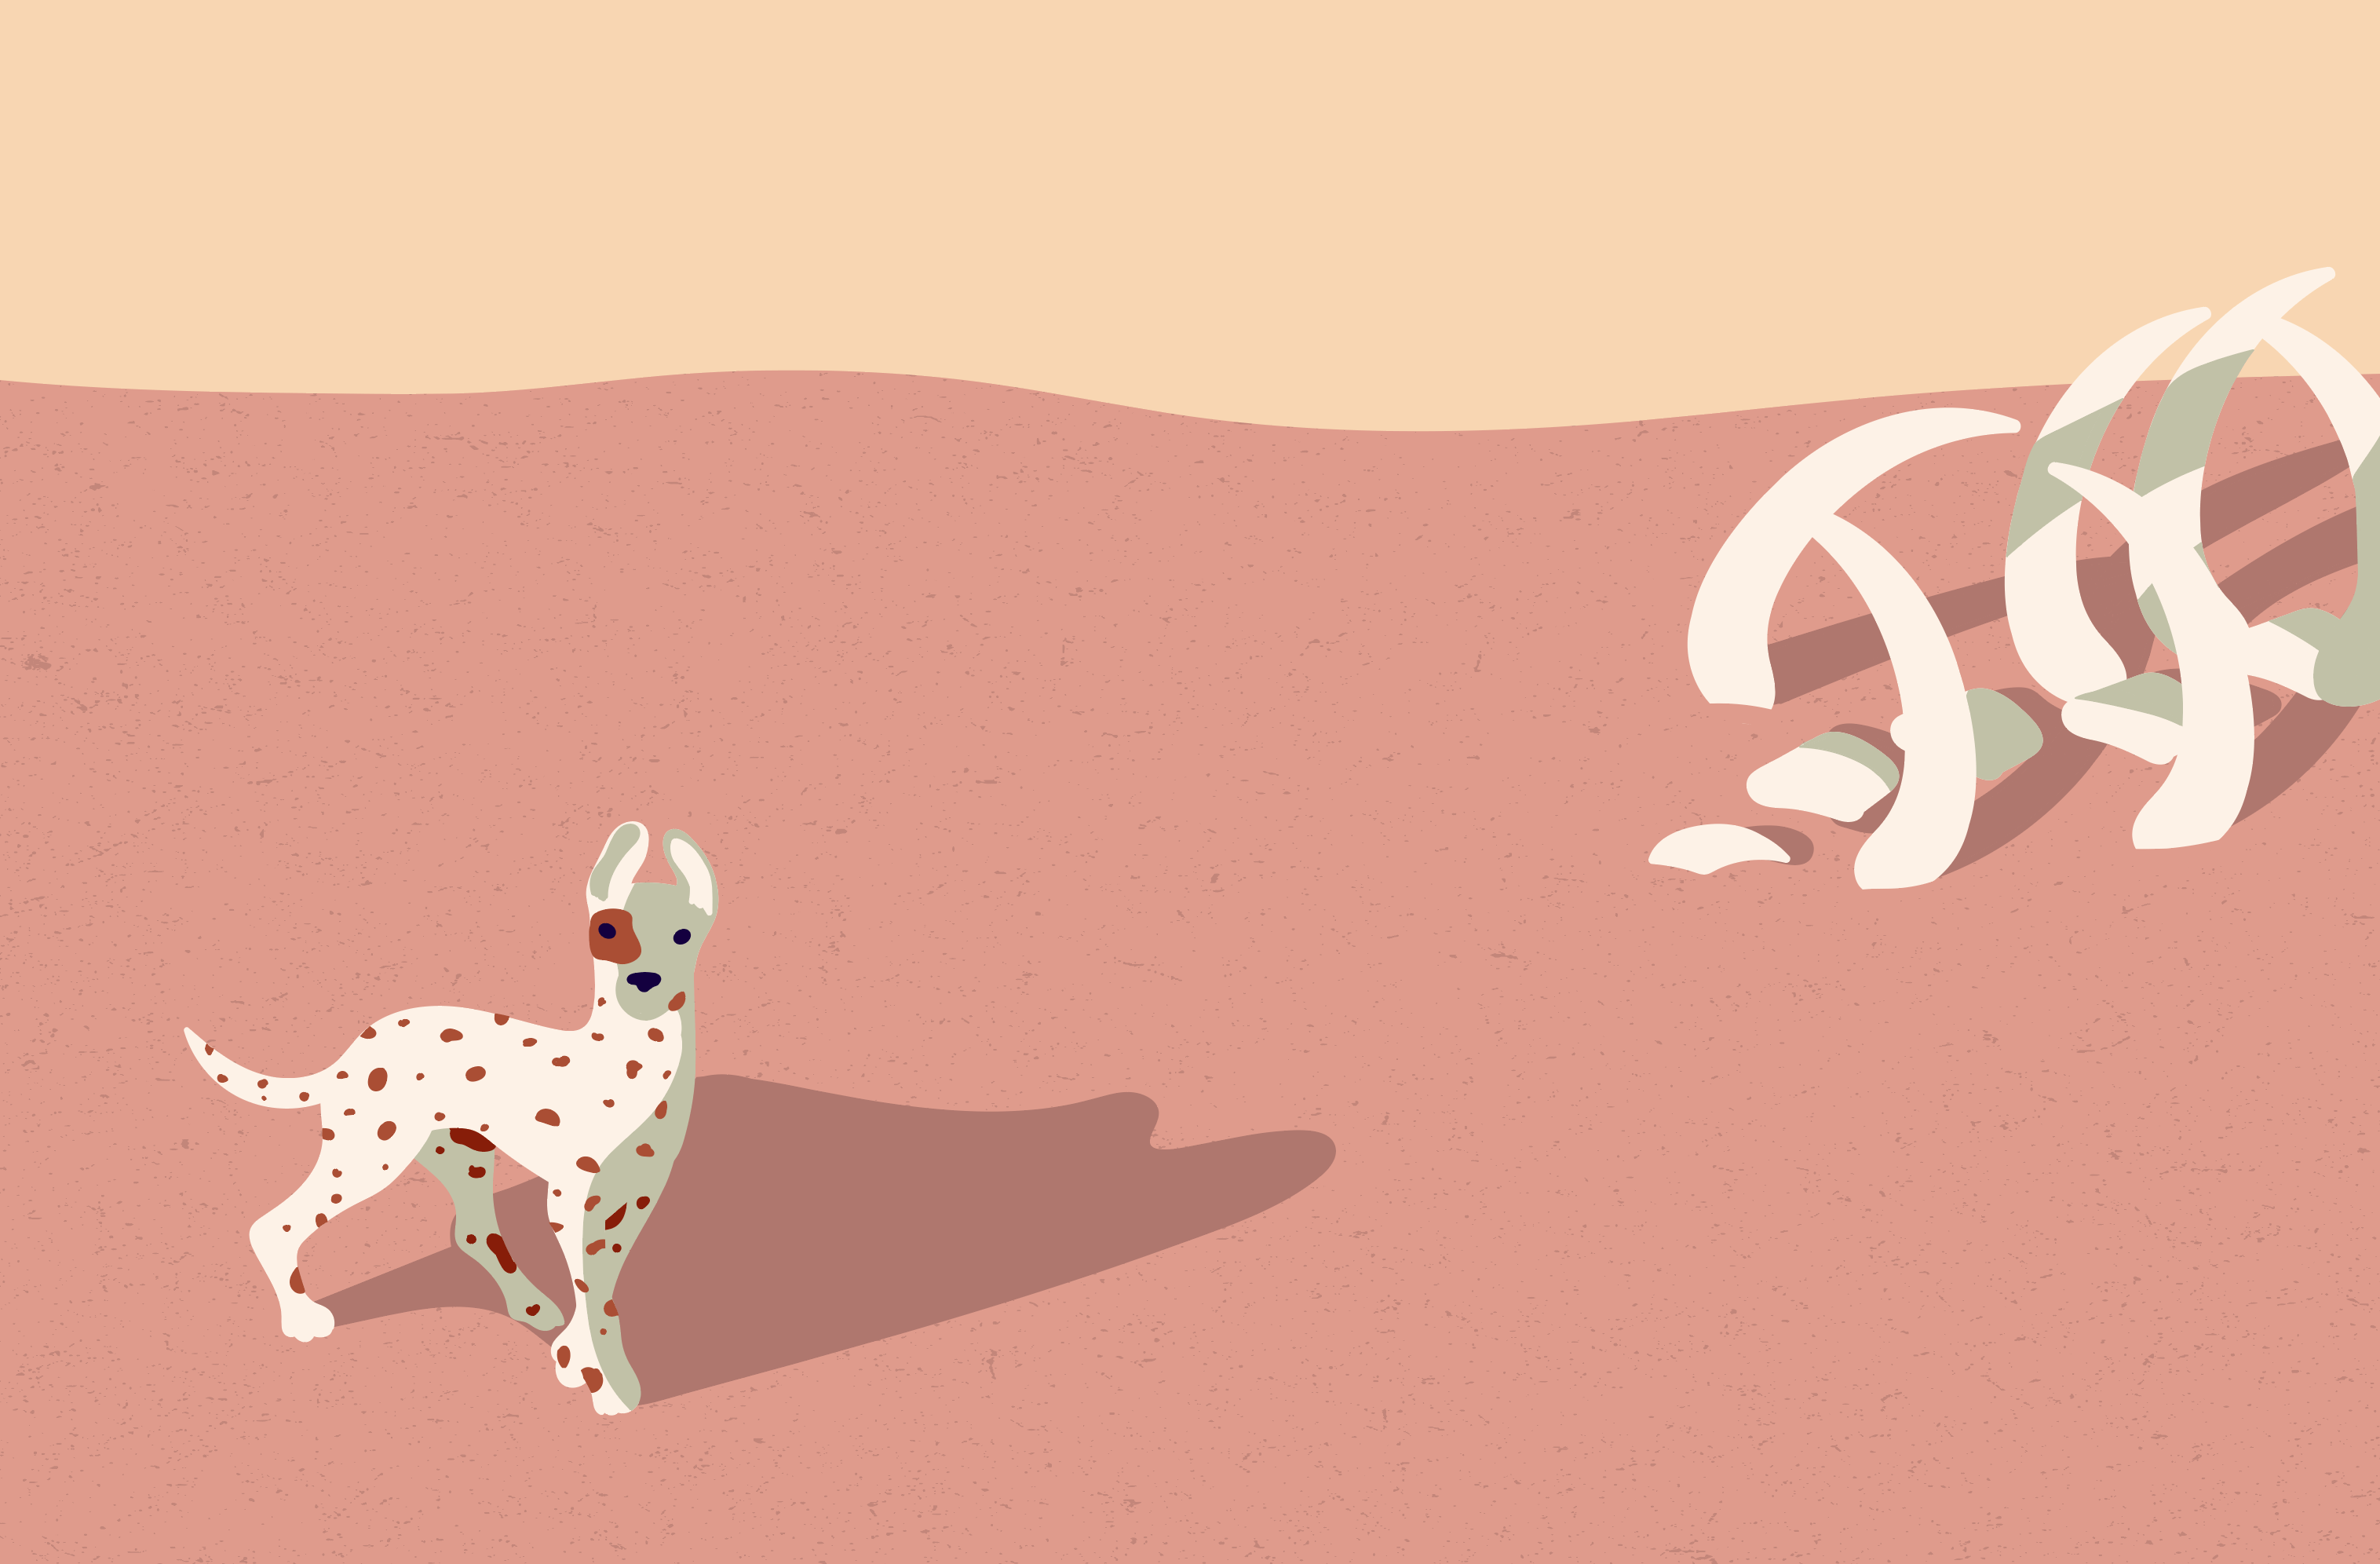 Desert Dog